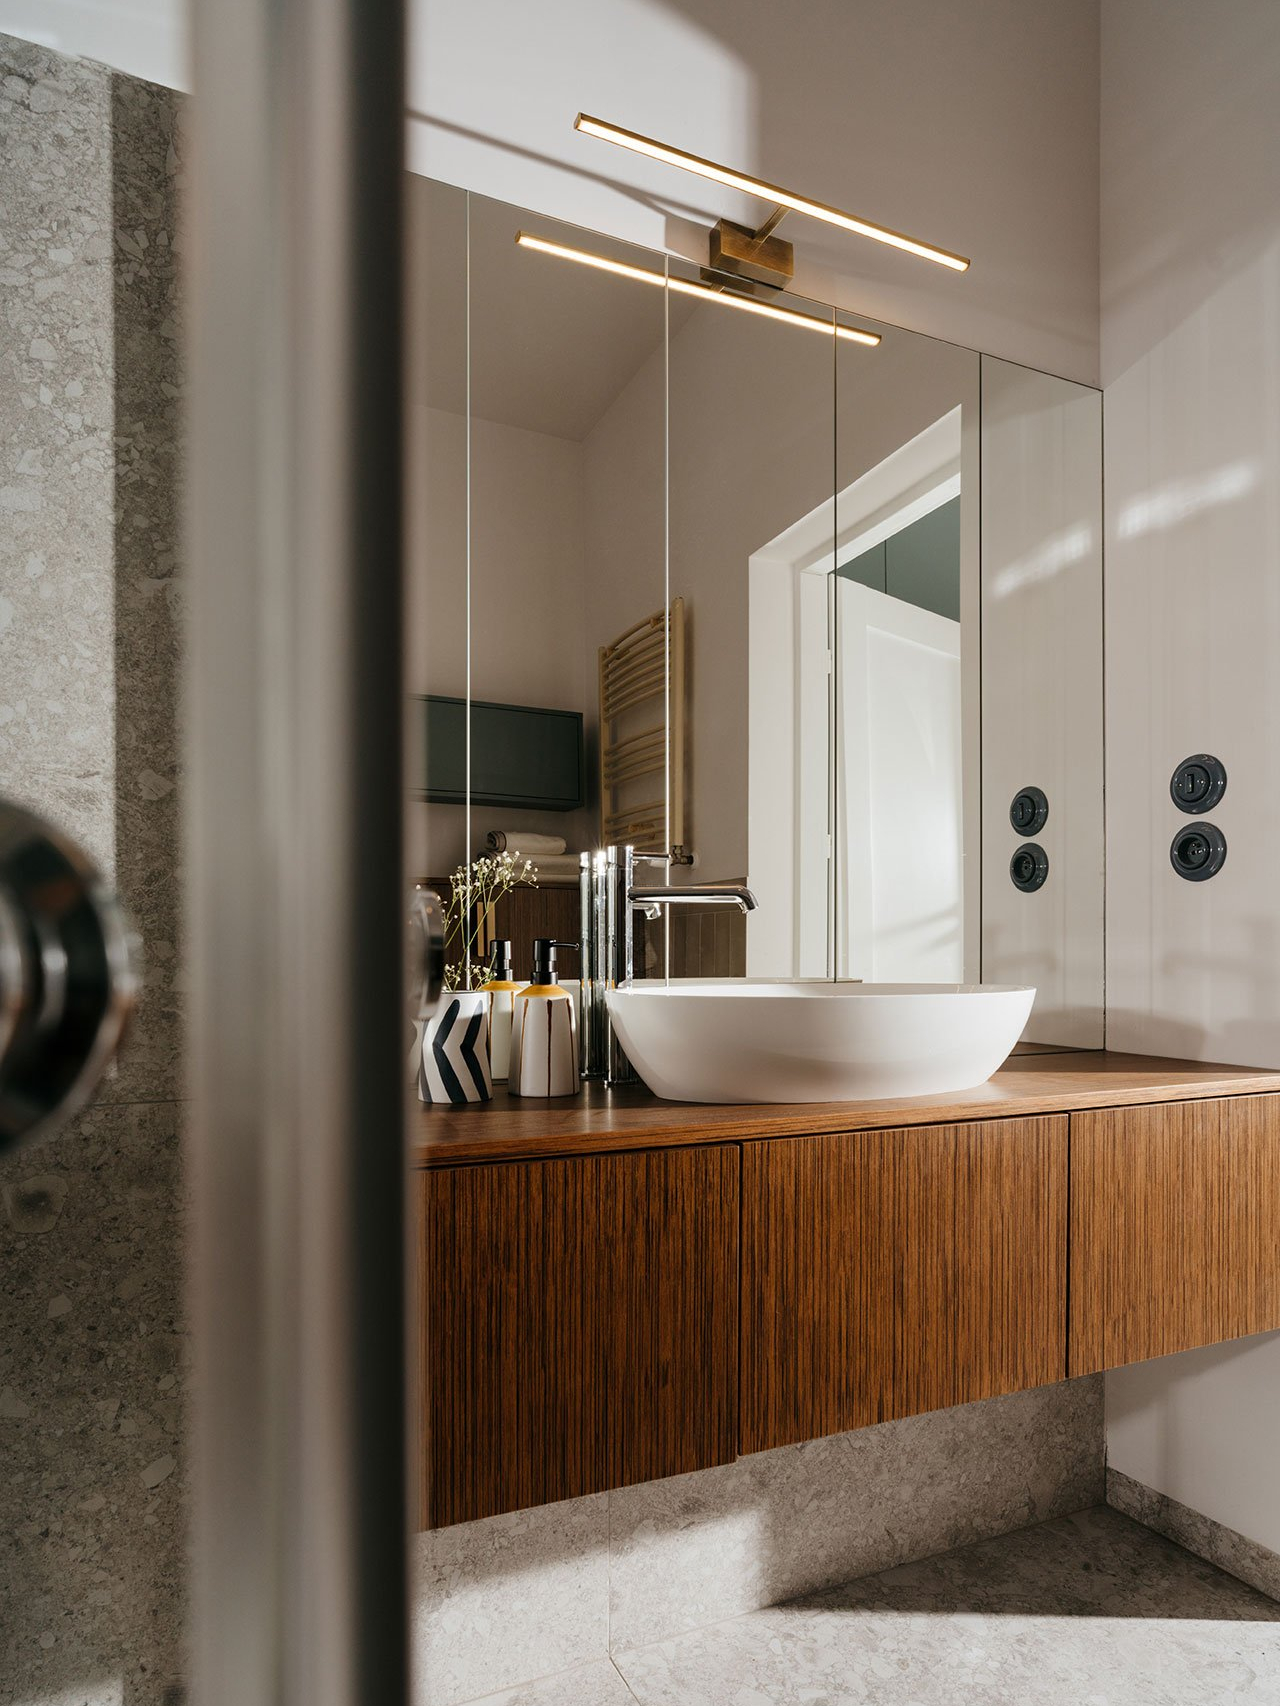 Phòng tắm sang chảnh với bức tường ốp gương cỡ lớn, phản chiếu không gian và ánh sáng tuyệt đẹp. Phía trên là chiếc đèn mạ vàng đồng cho ánh sáng ấm áp, kết hợp tủ vanity gỗ tone trầm.